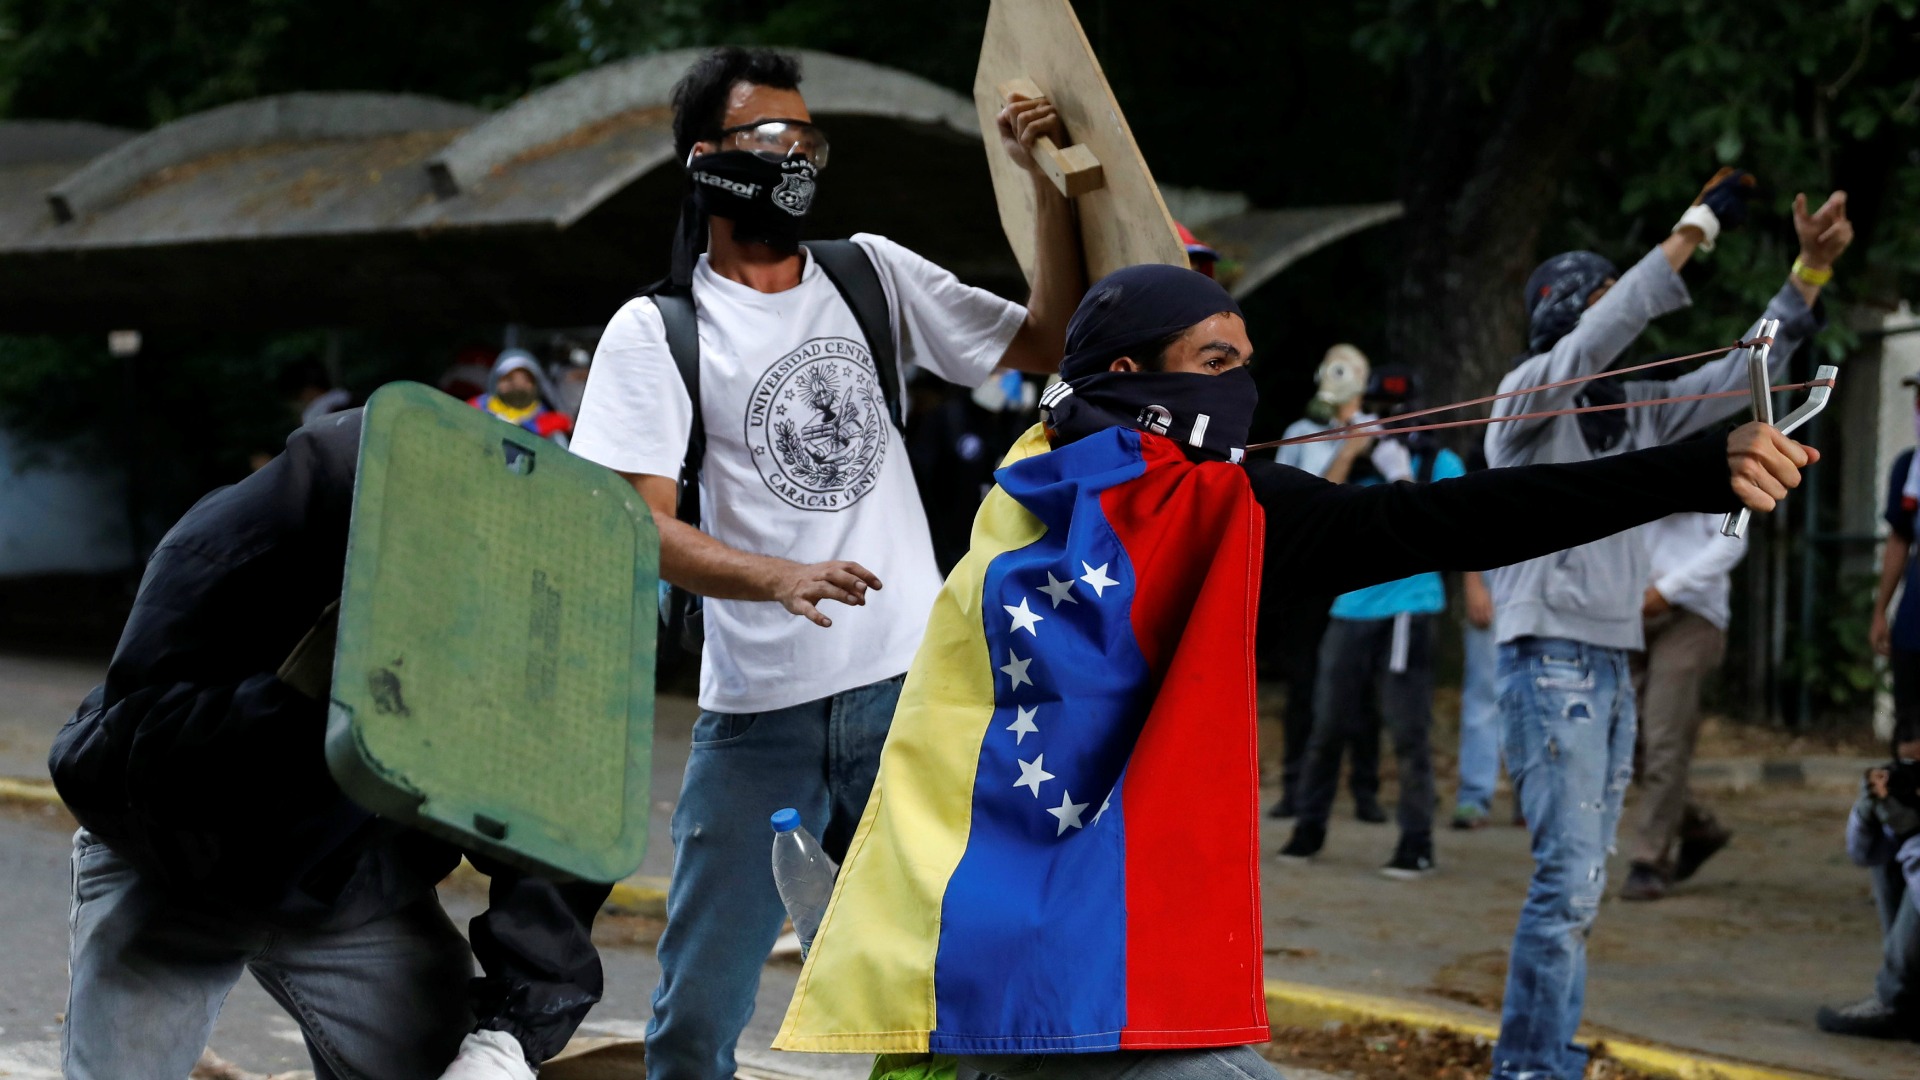 Los Estudiantes venezolanos chocan con la policía en una nueva protesta contra Maduro